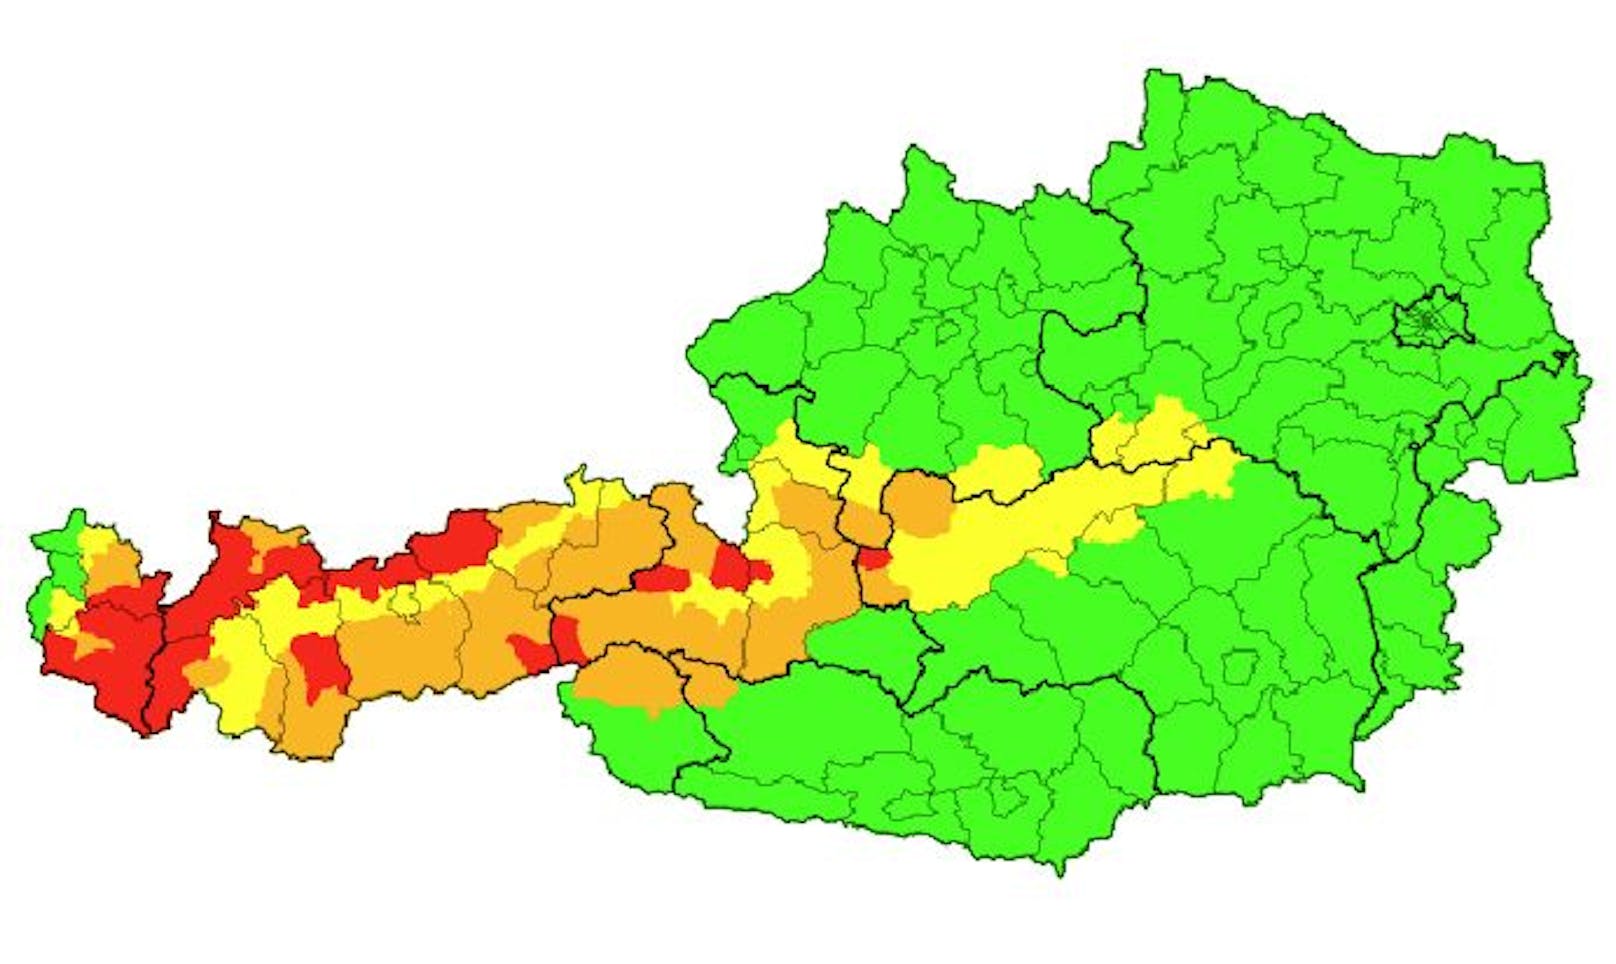 Entsprechend wurde besonders in Tirol und Vorarlberg Warnstufe Rot ausgegeben.